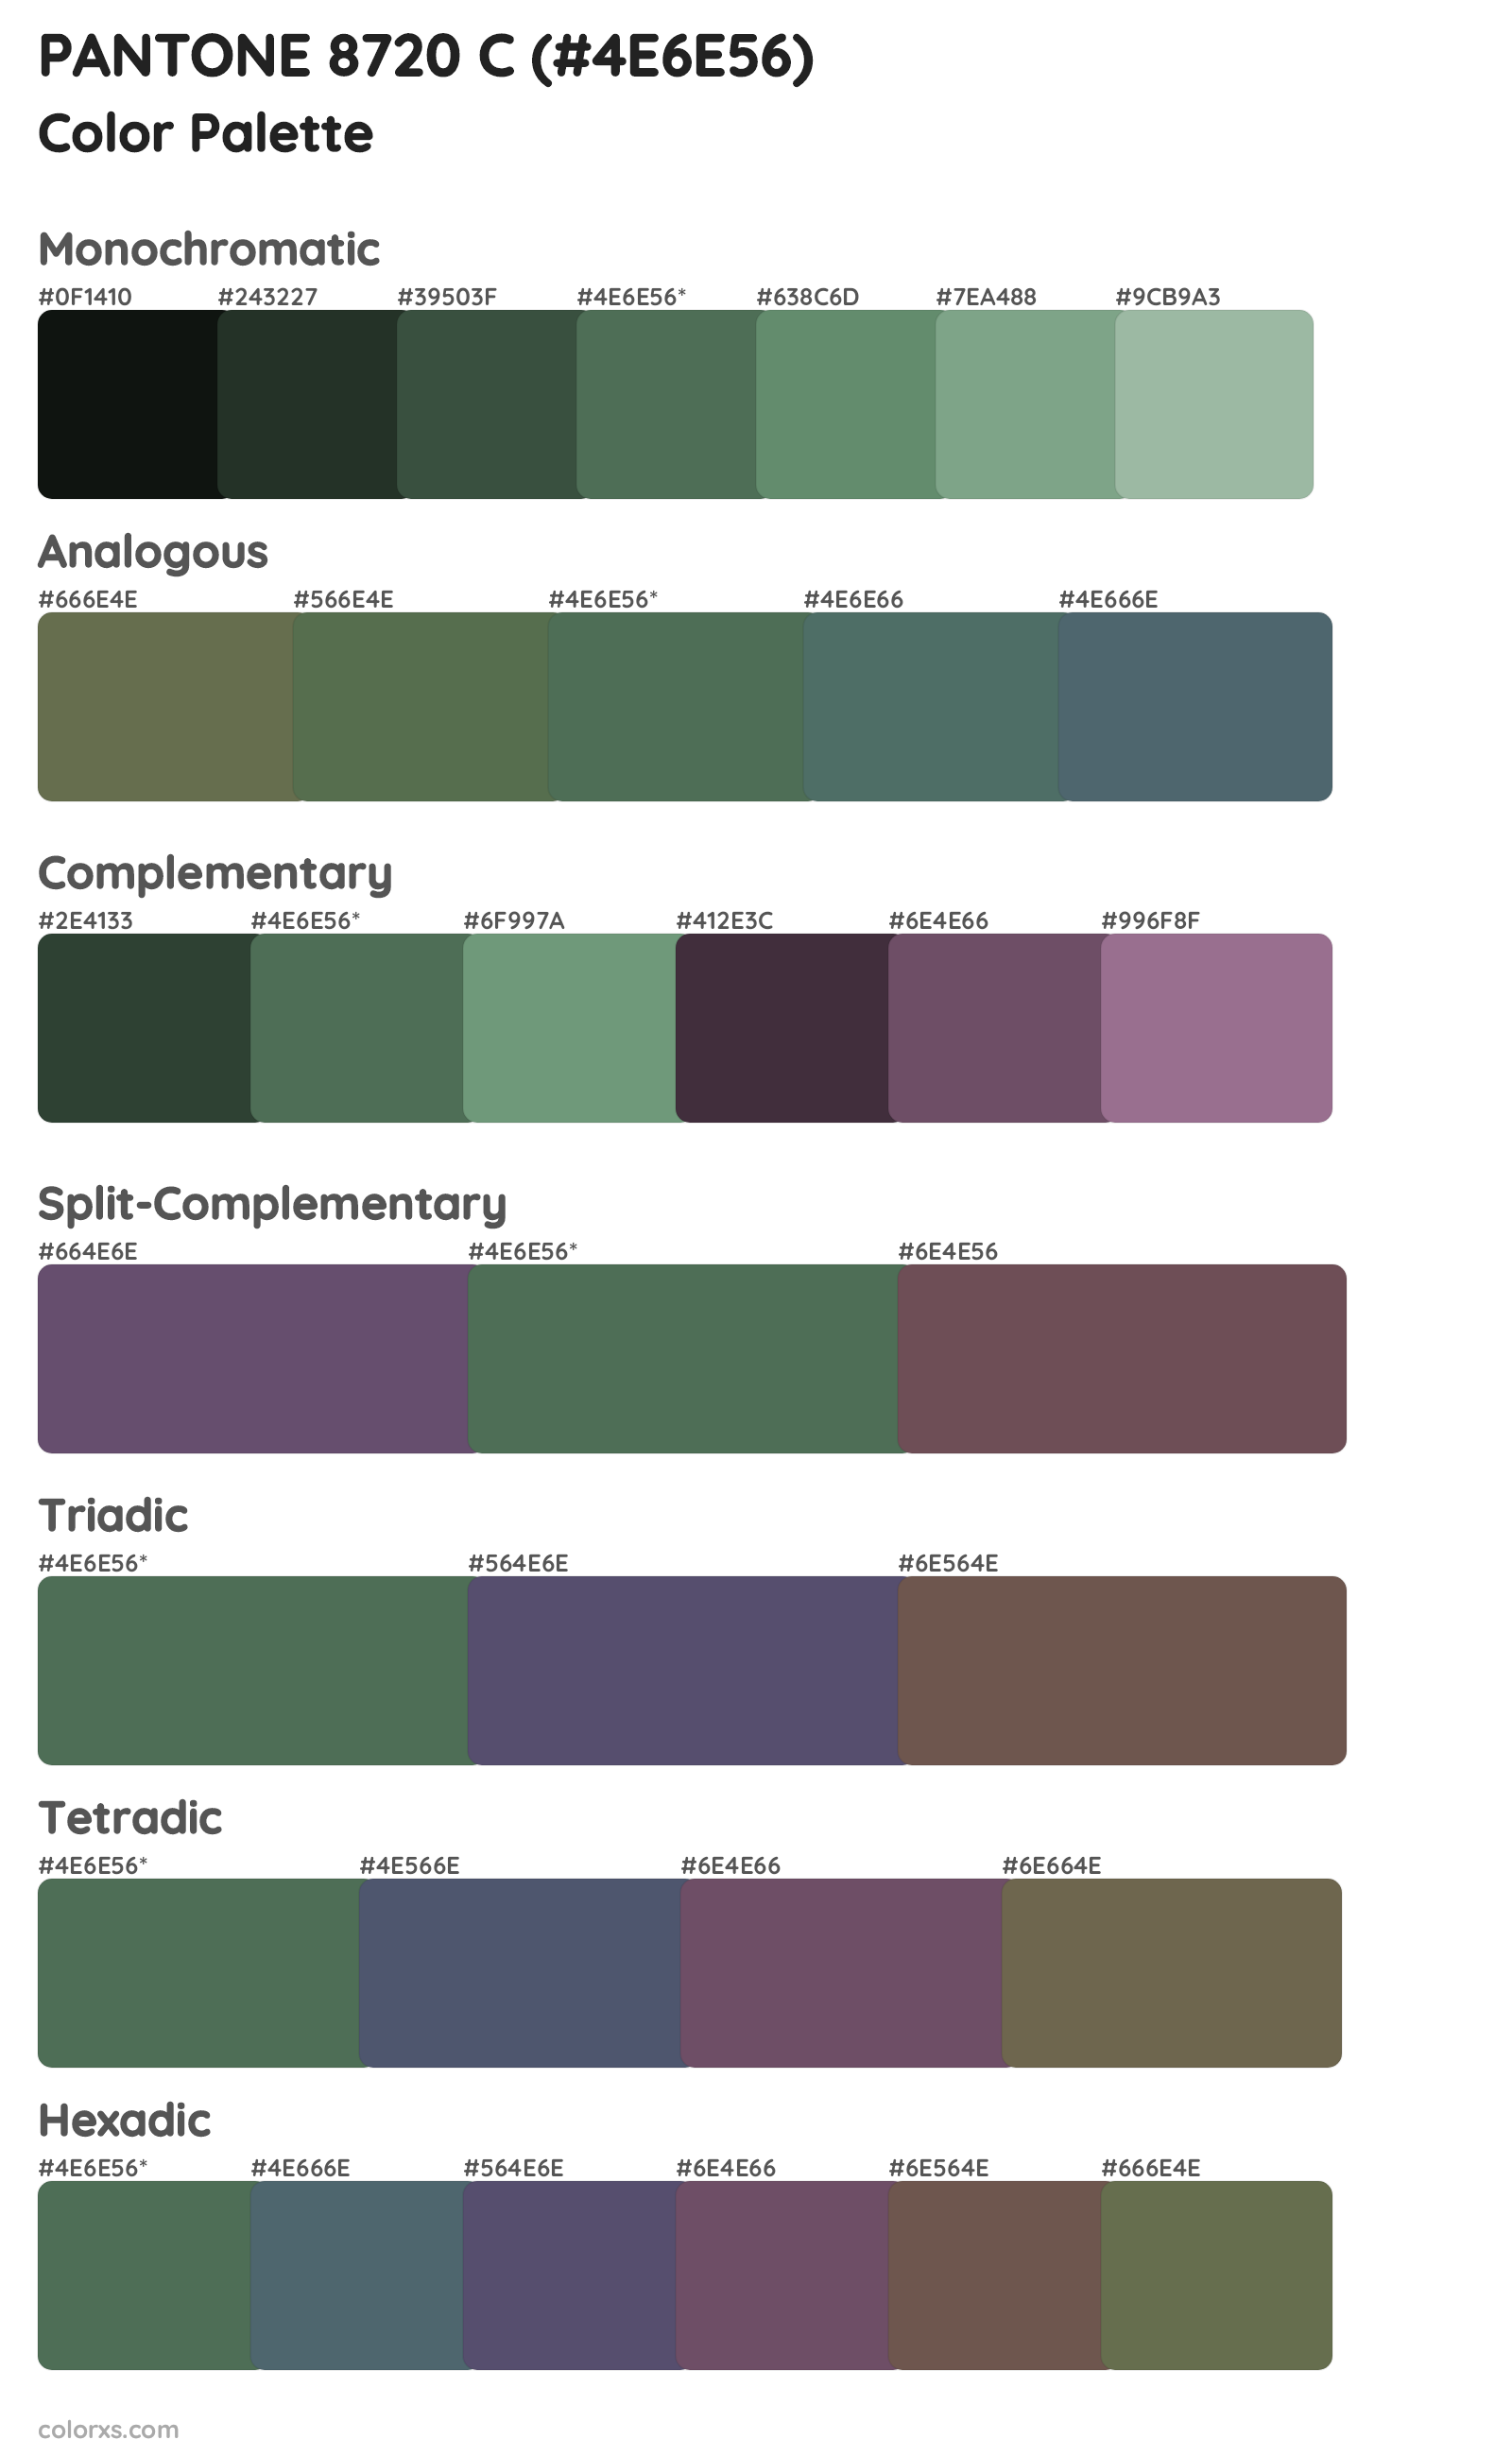 PANTONE 8720 C Color Scheme Palettes